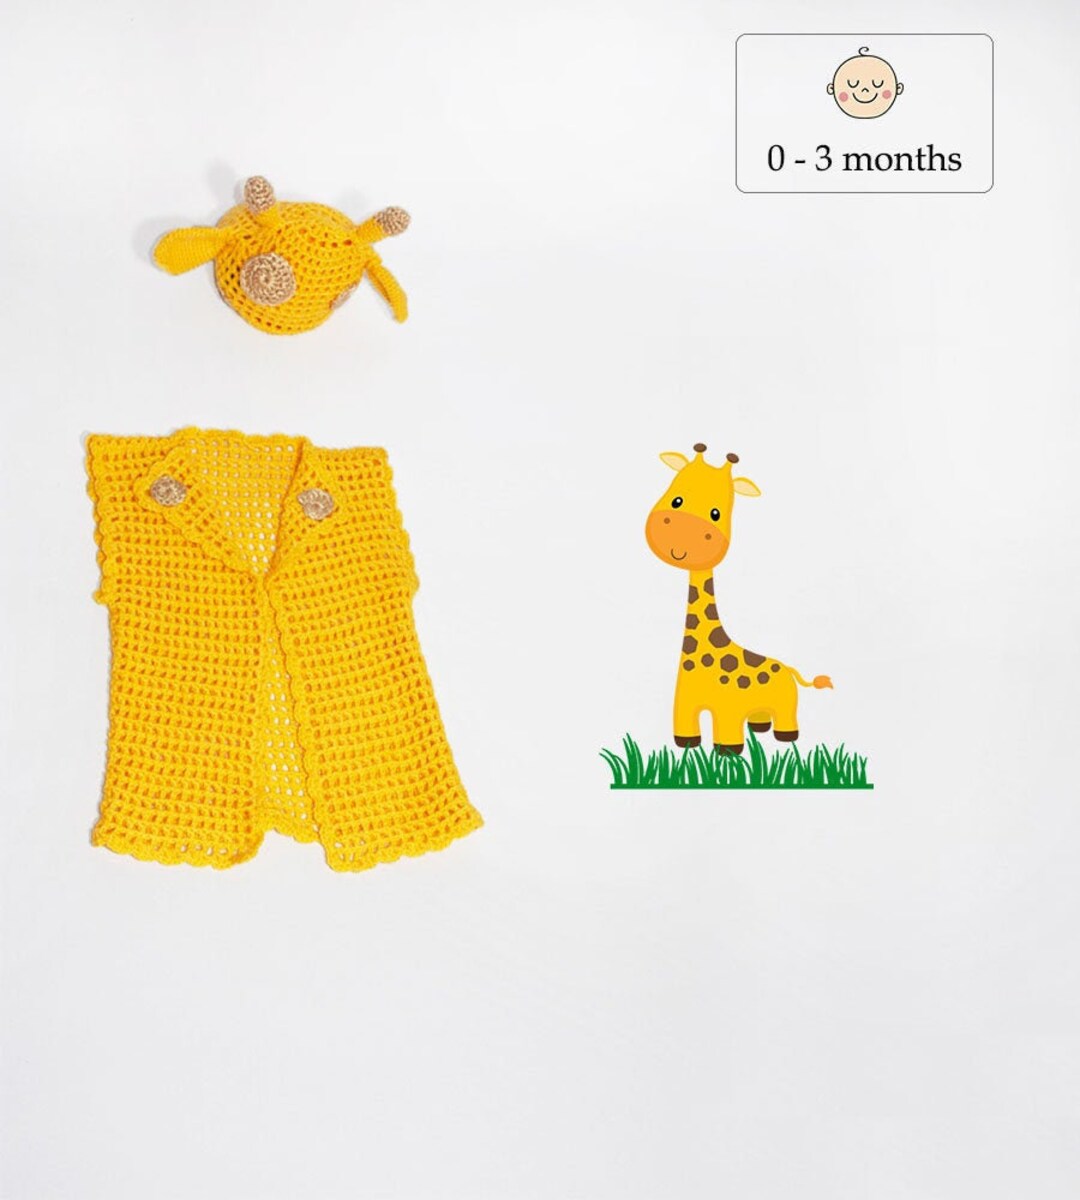 Acquista online il costume da giraffa maculata per bambini